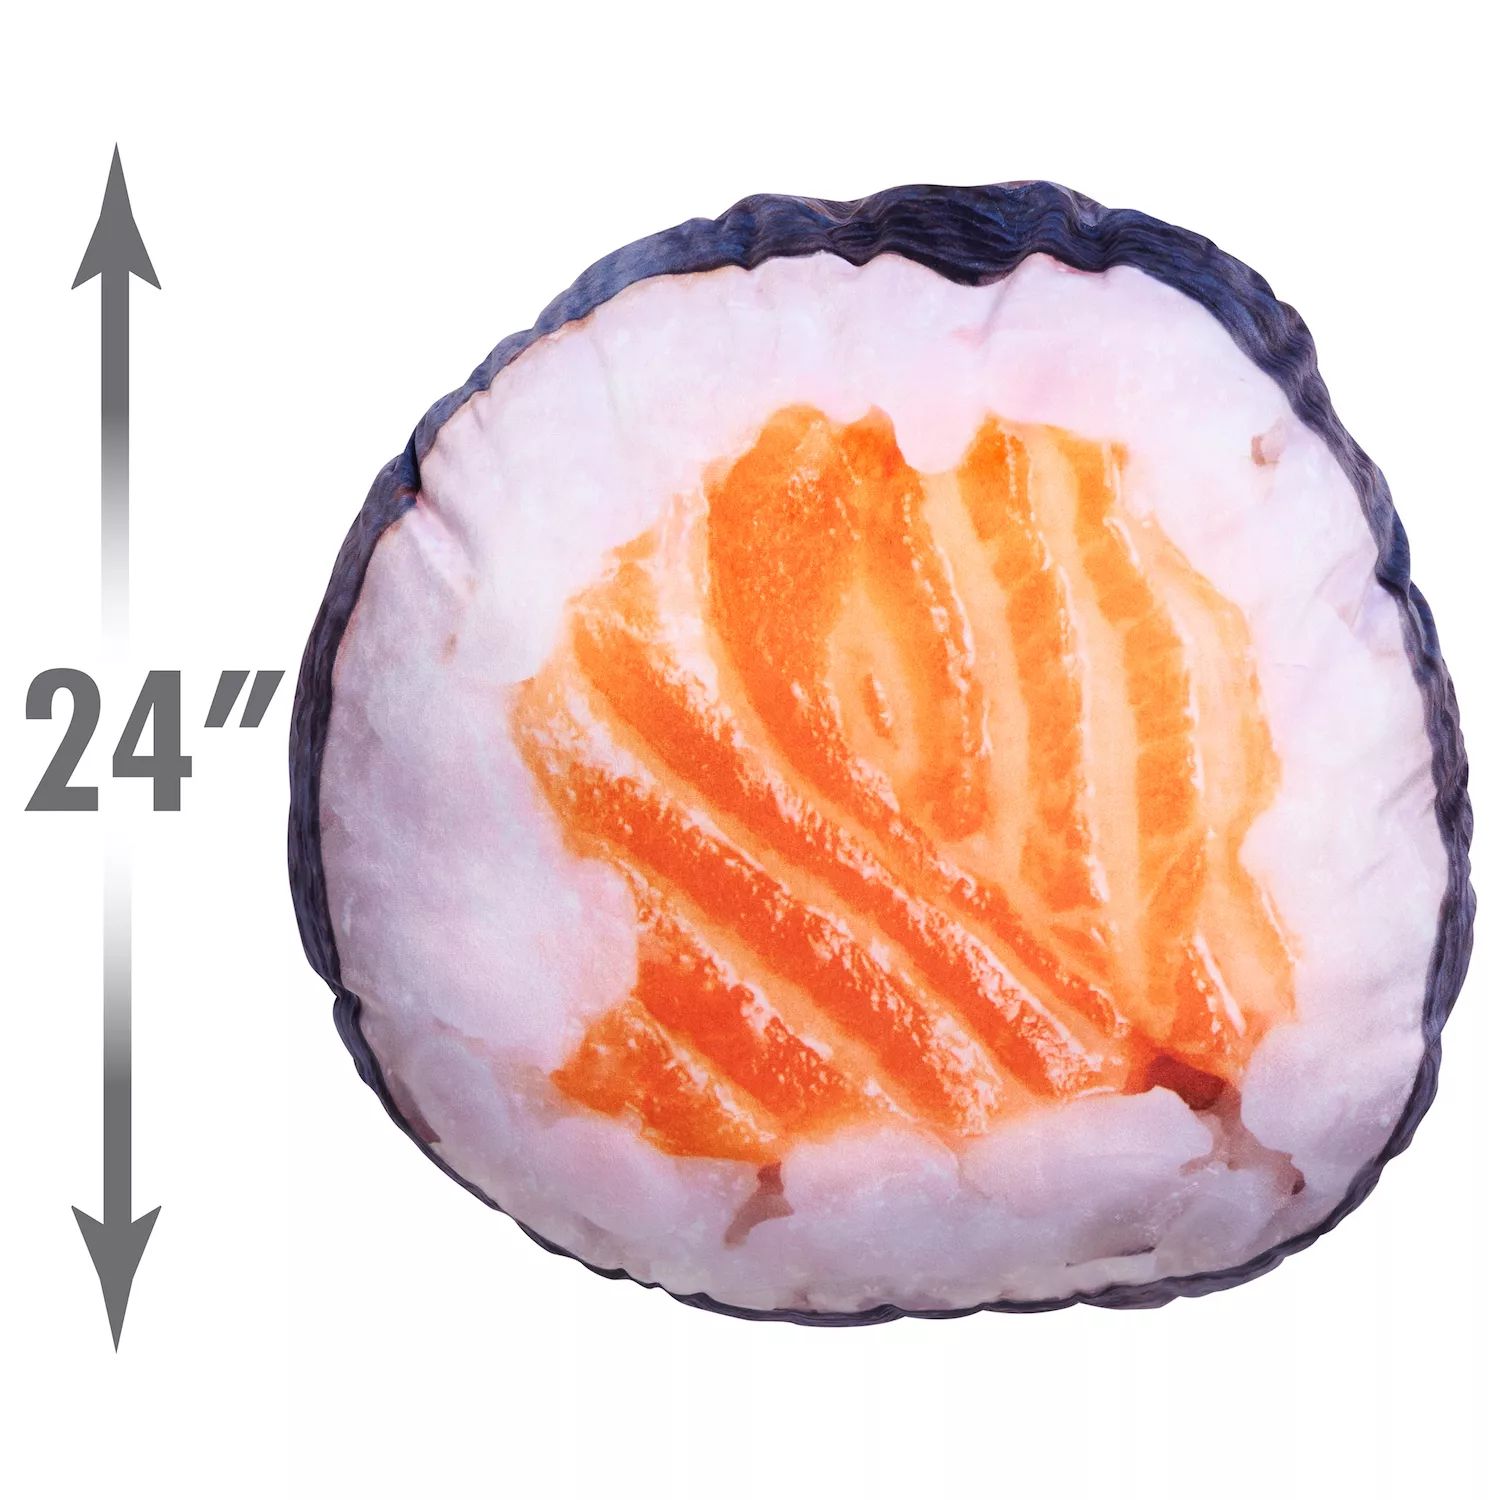 цена Просто играйте серьезно: плюшевая еда для суши большого размера Just Play